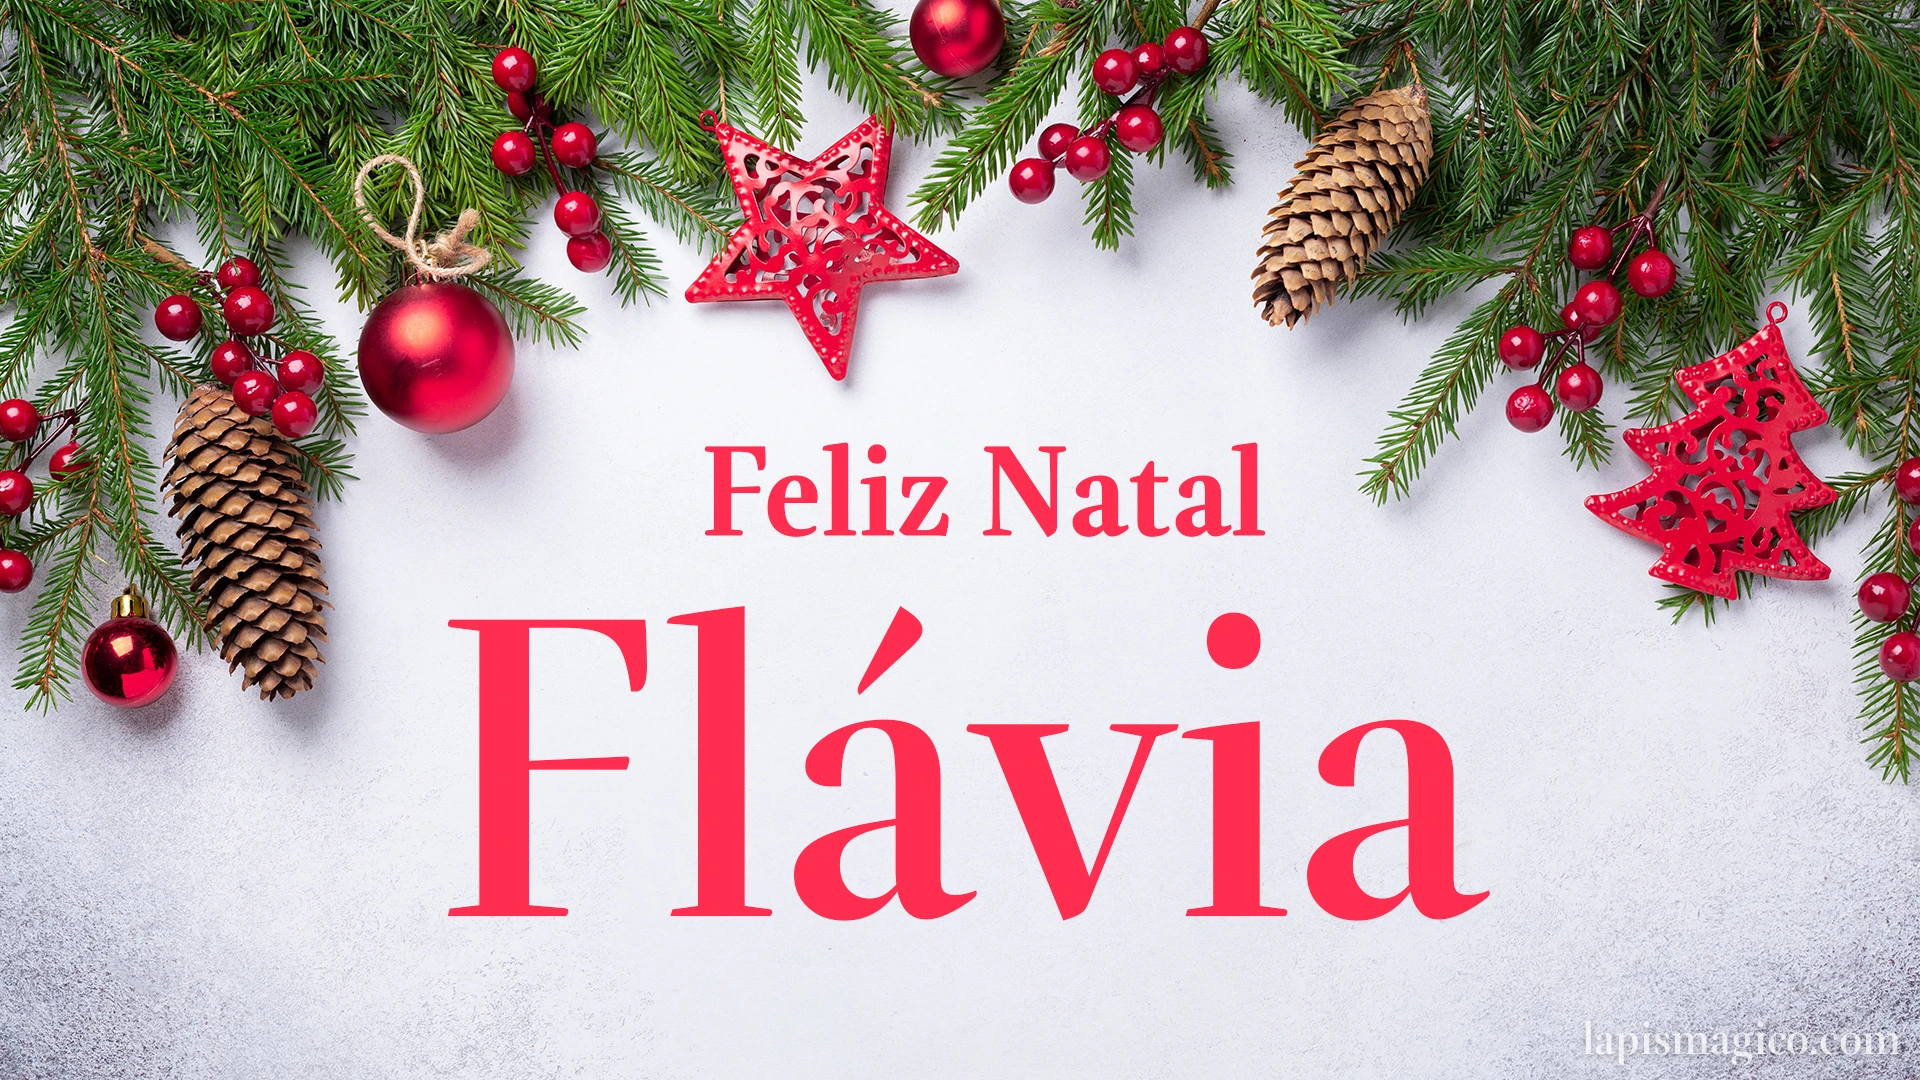 Oh Flávia, cinco postais de Feliz Natal Postal com o teu nome